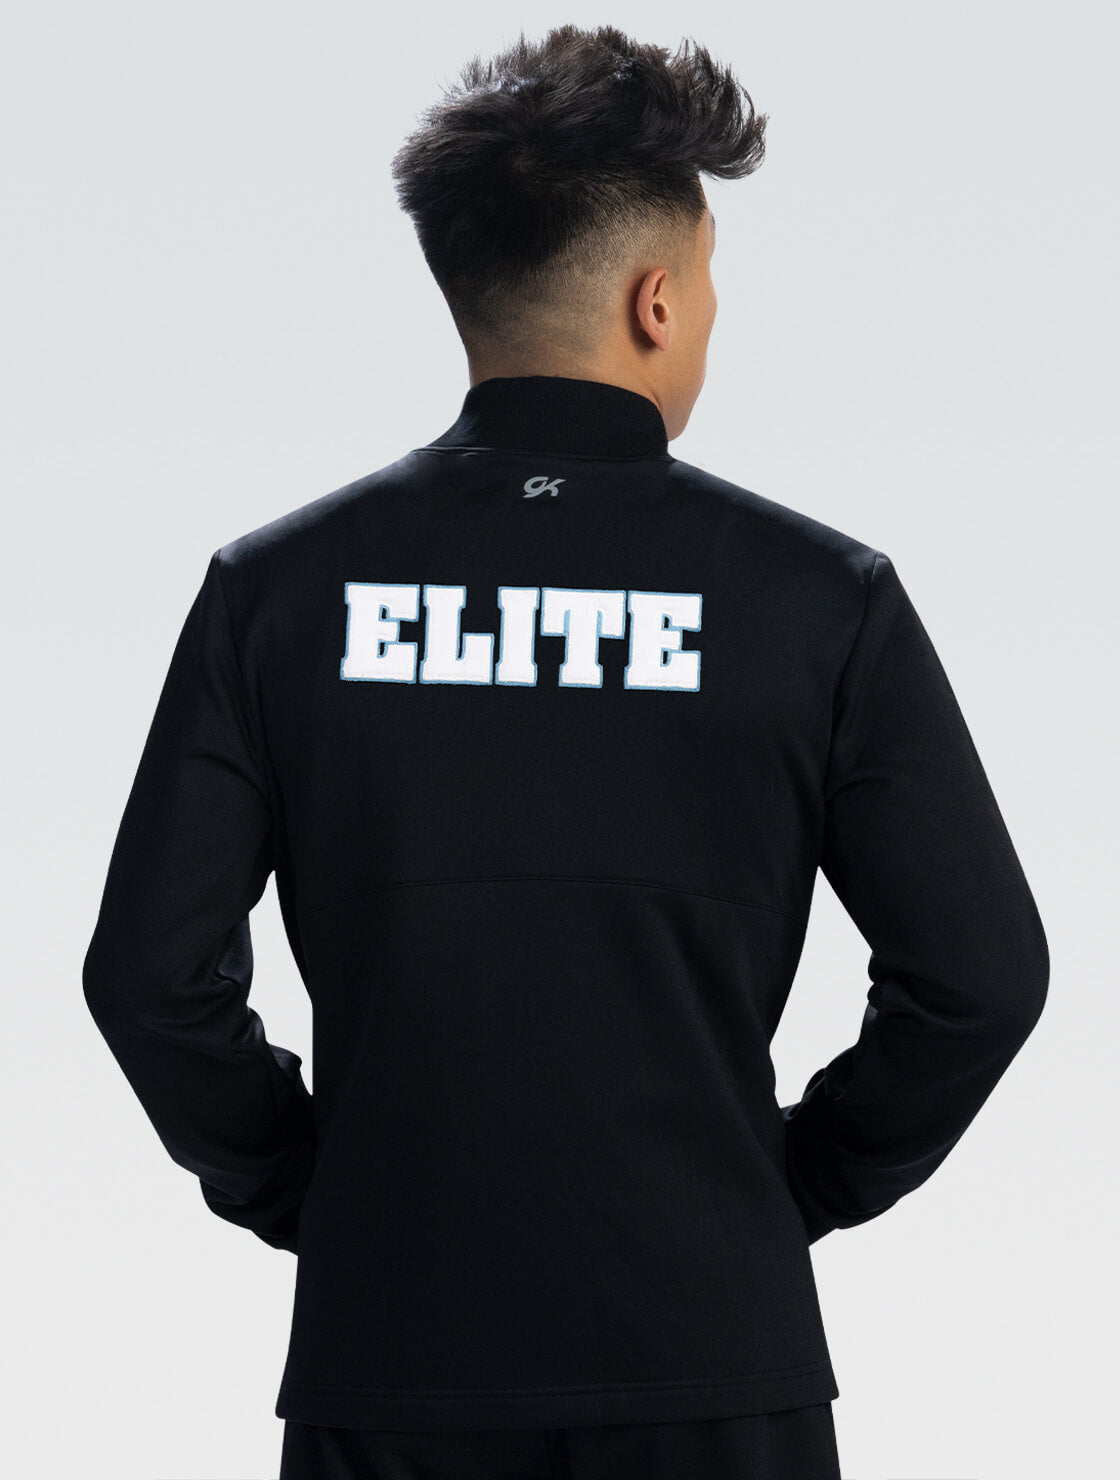 GK ELITE Varsity Men's Jacket - WJM001